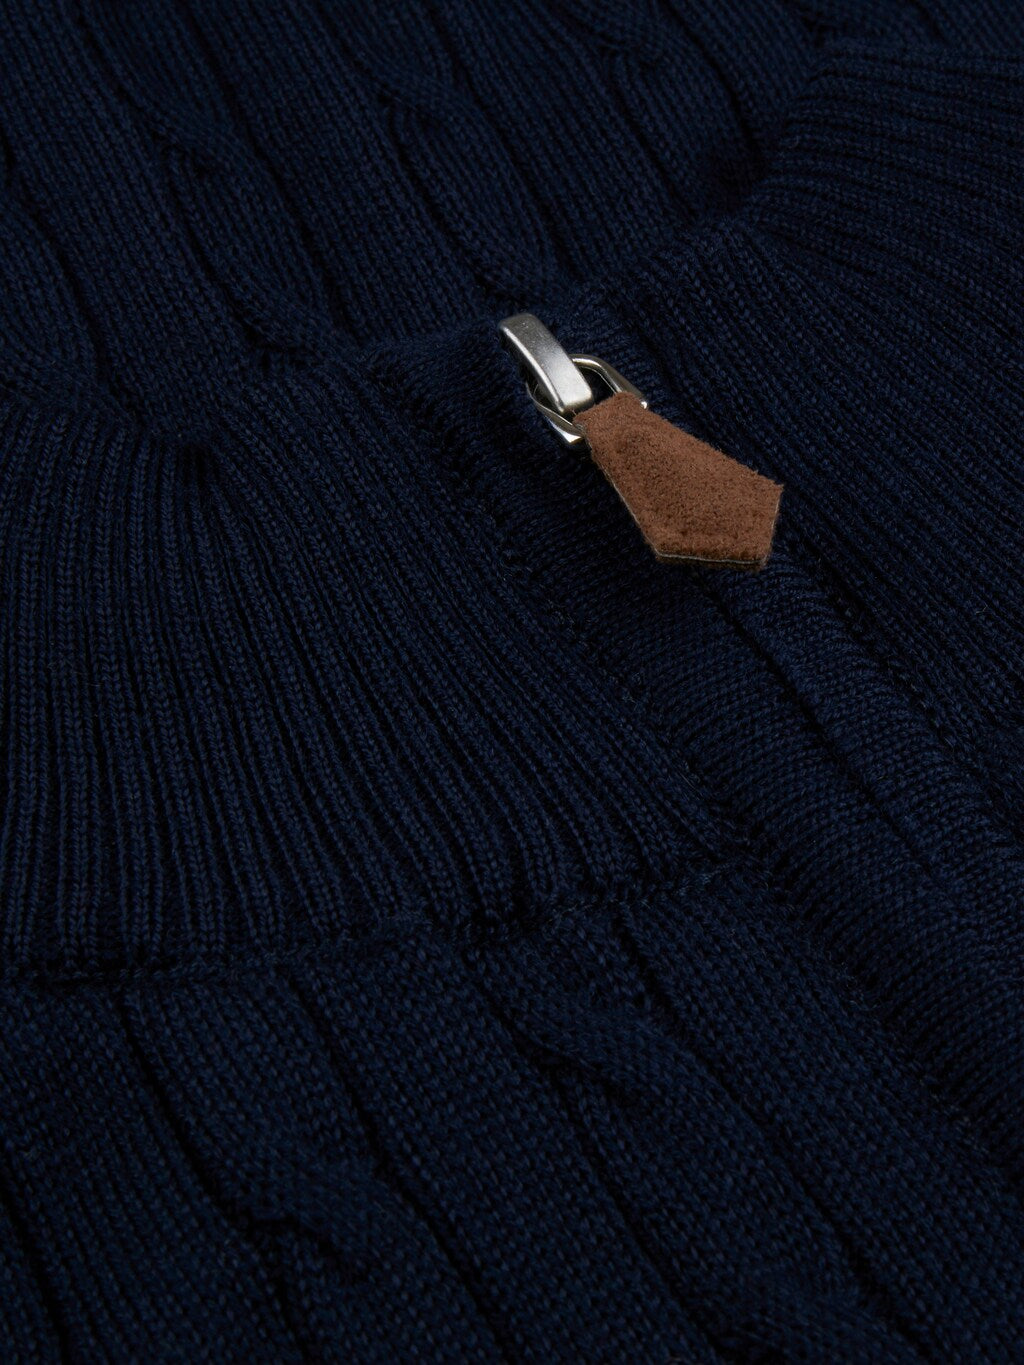 Sweater knitted half zip merino